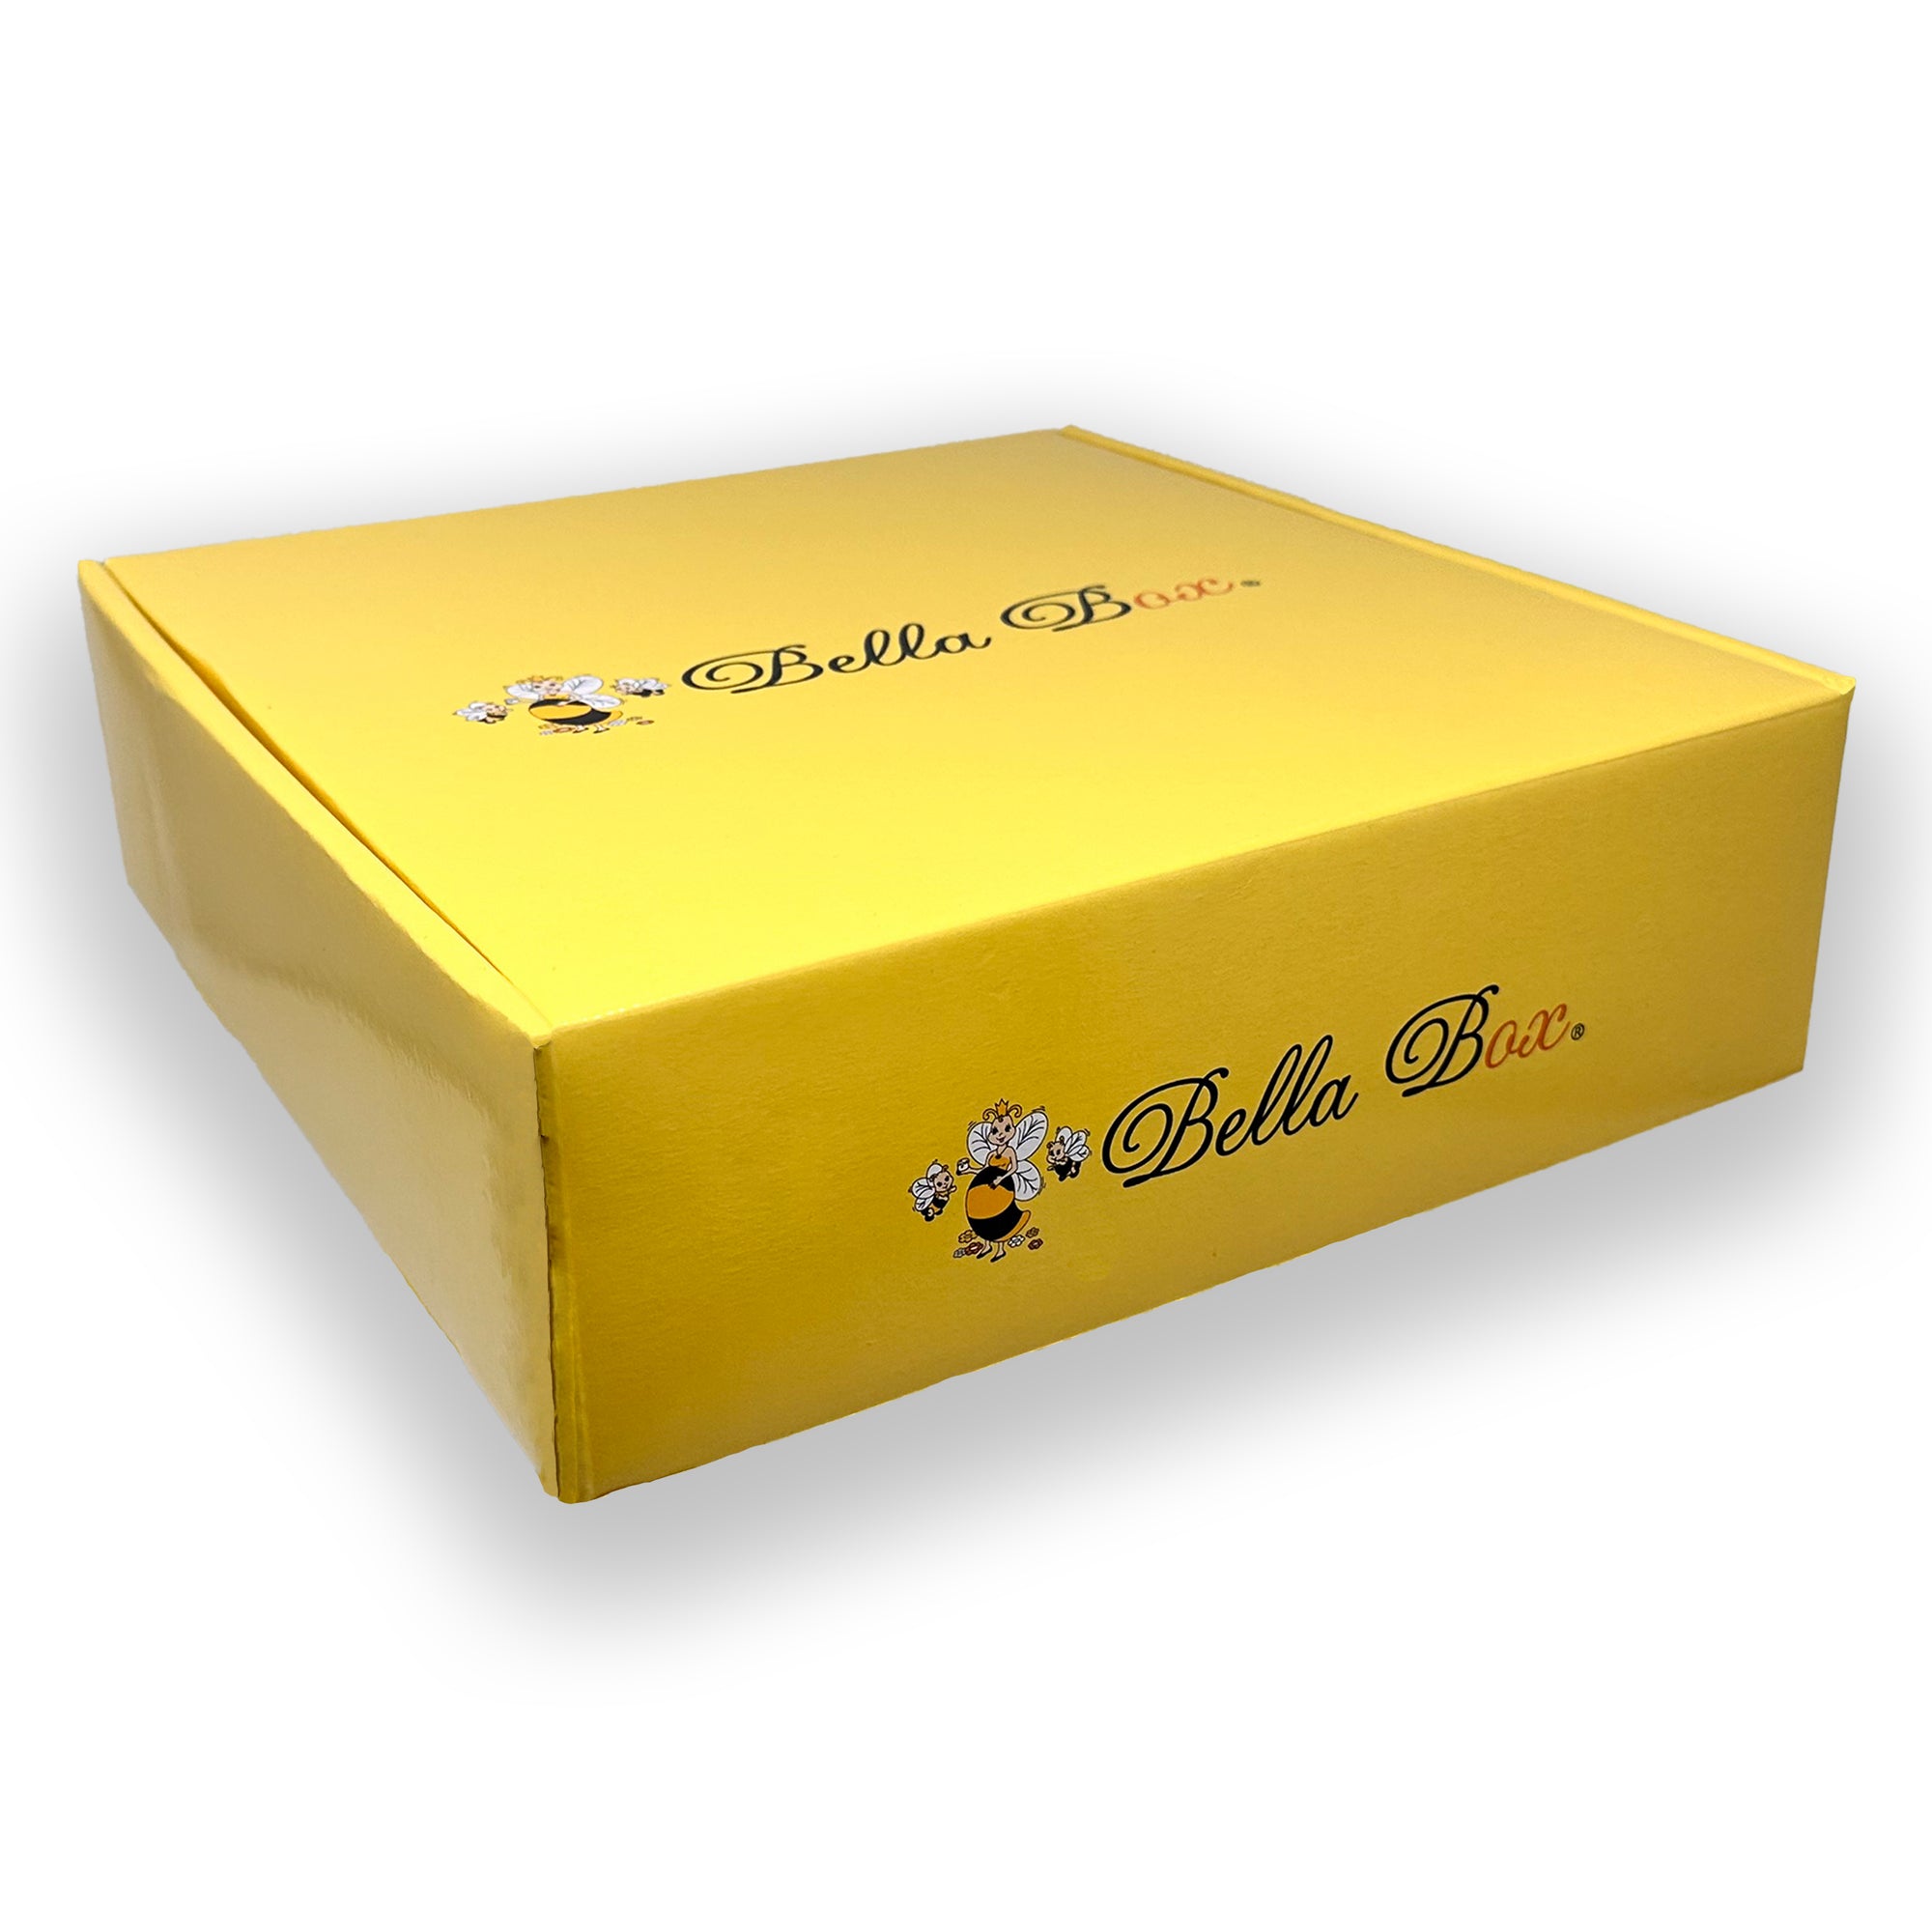 Bella B Gift Set - Face Cream 1.7oz and Eye Cream 0.5oz